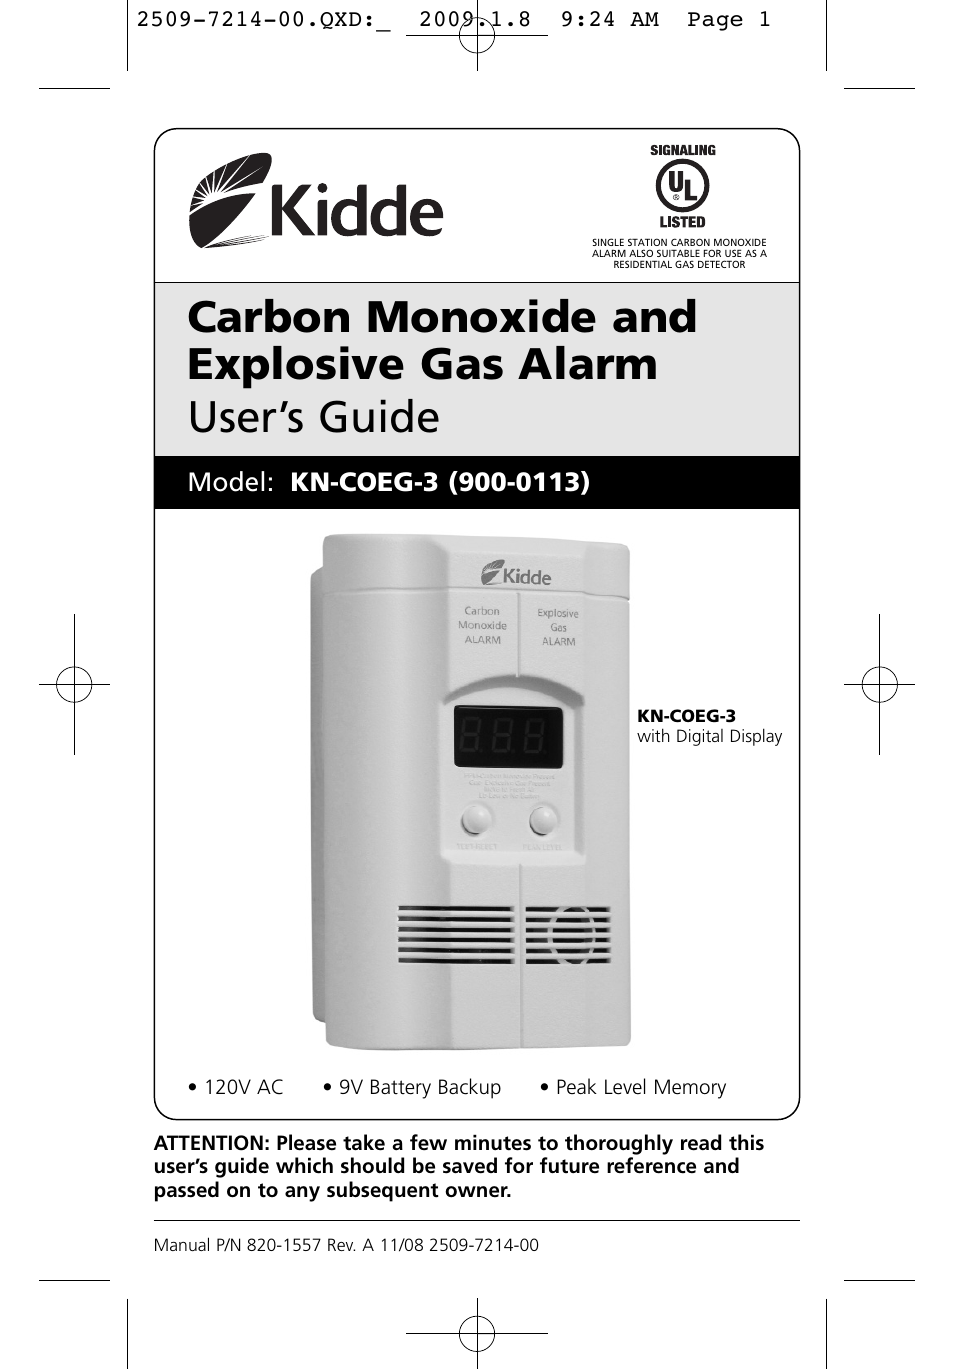 Garrison carbon monoxide alarm manual 46-0019